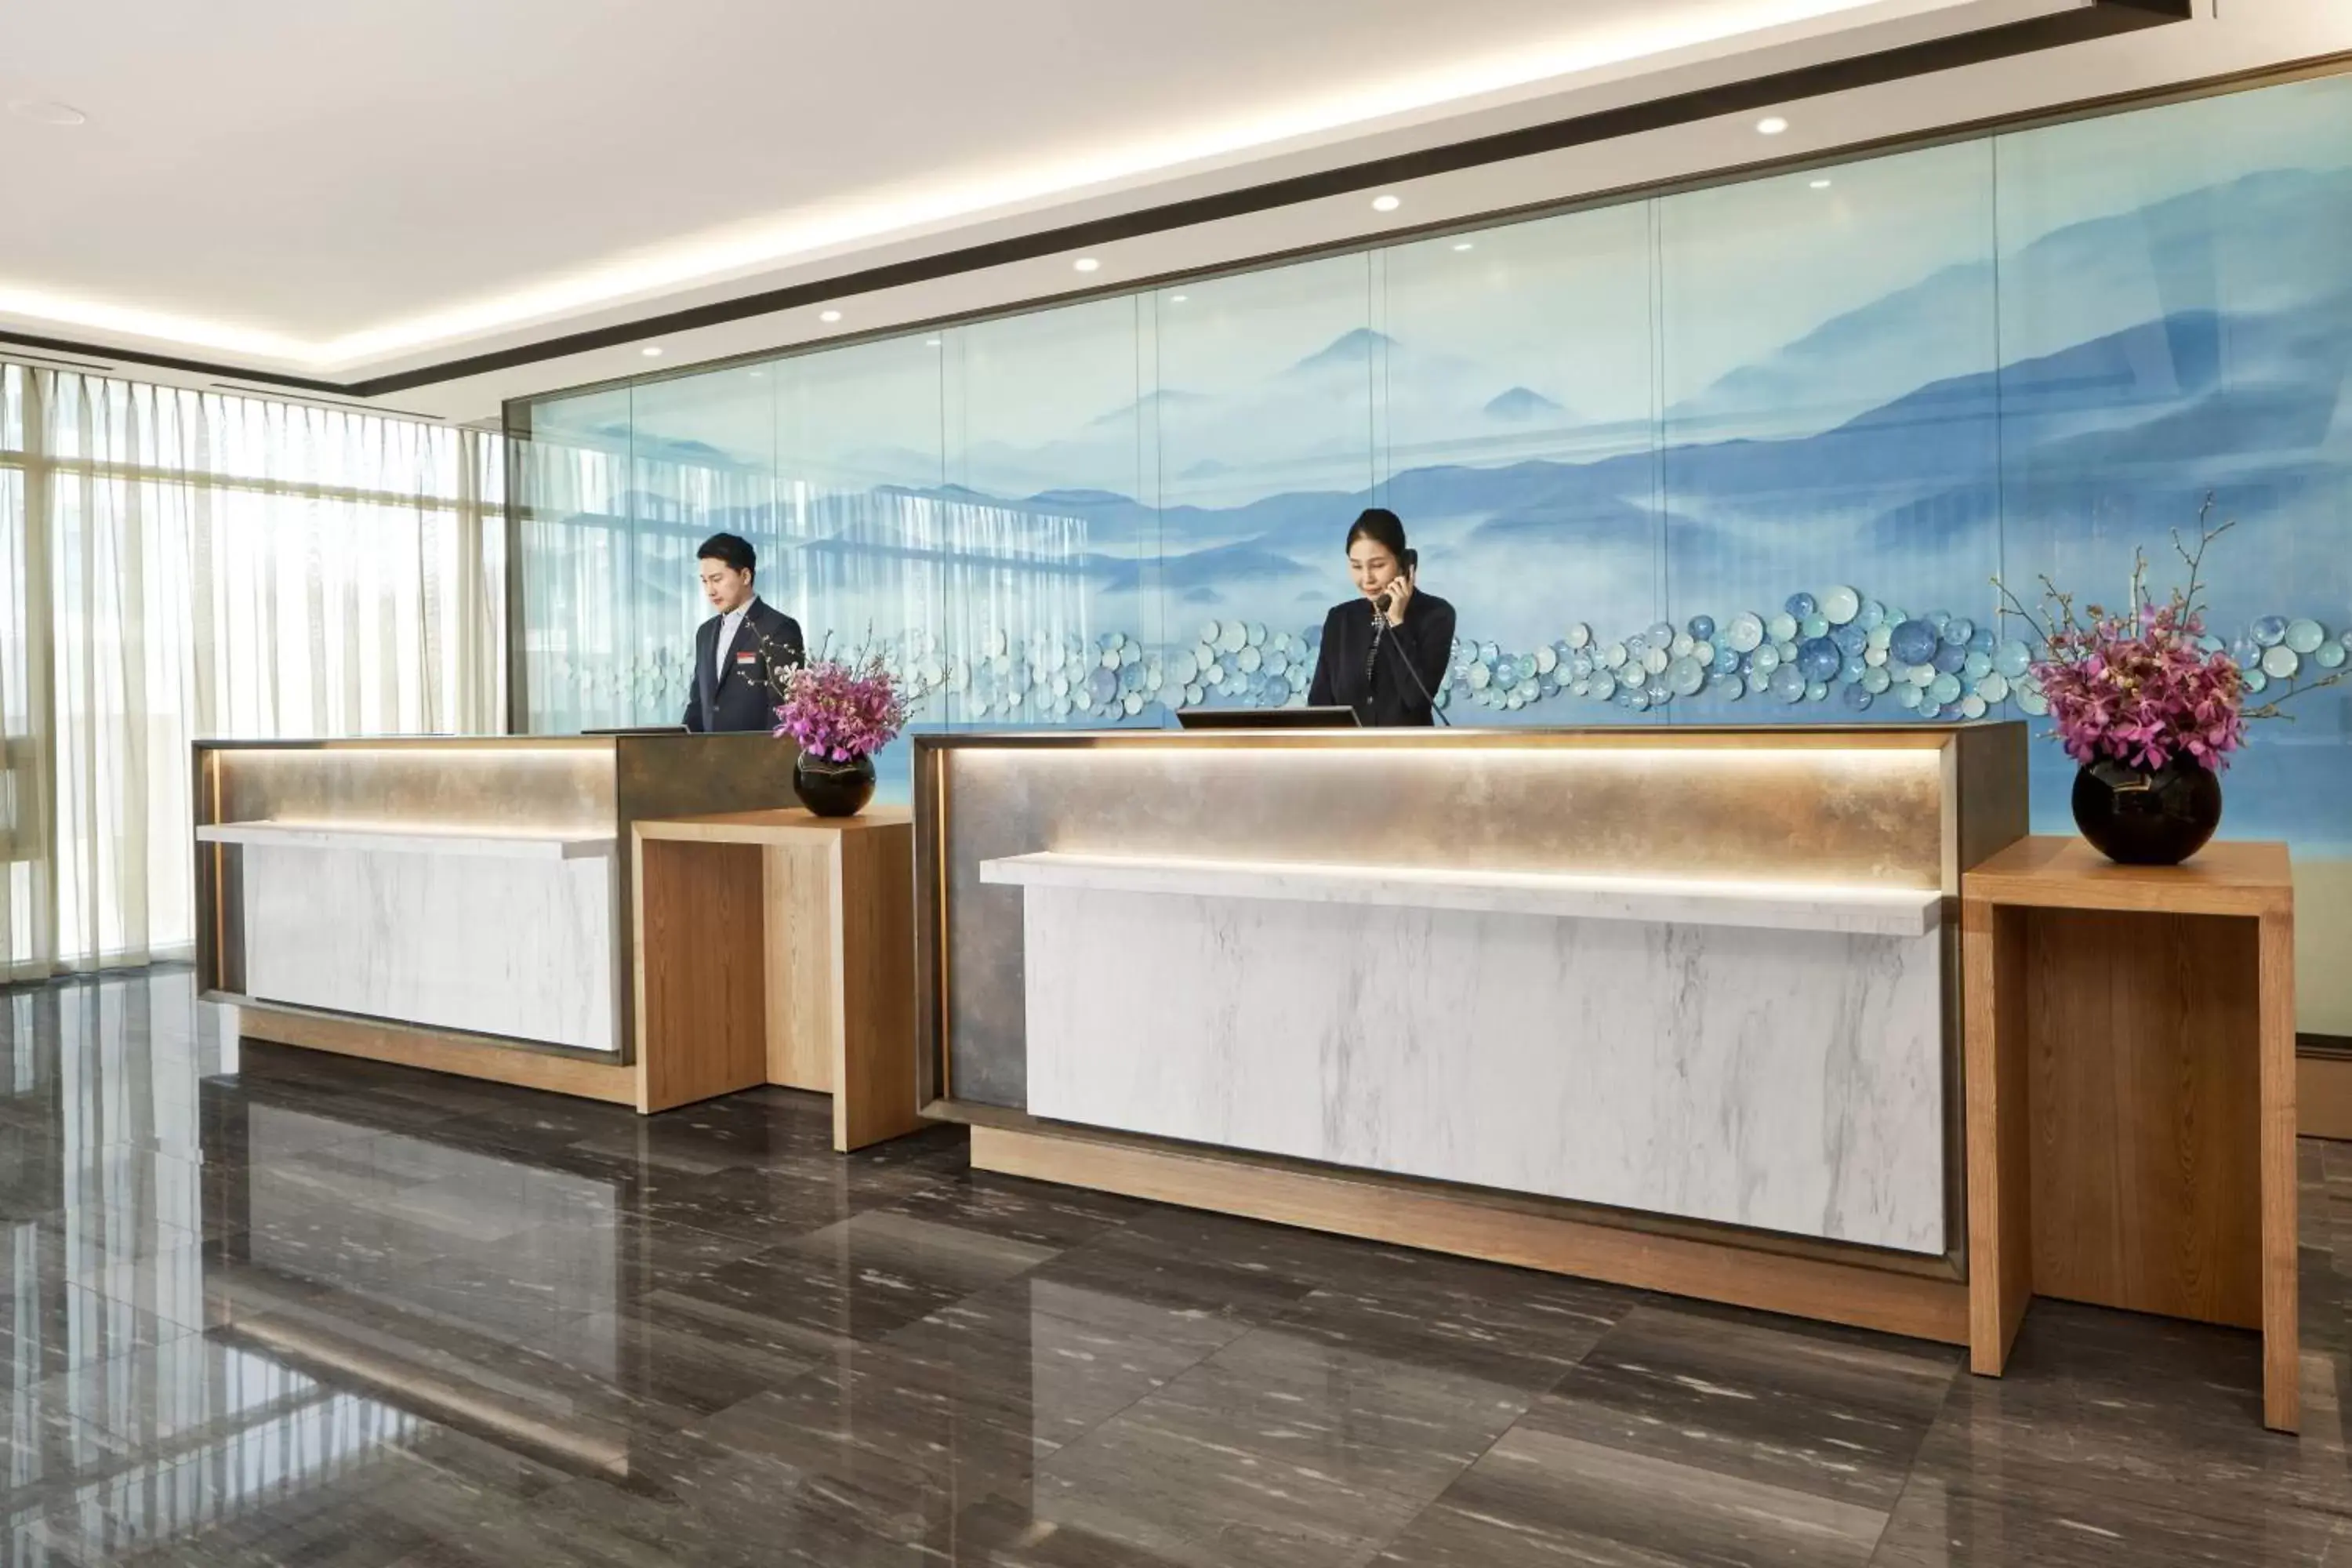 Lobby or reception, Lobby/Reception in Daegu Marriott Hotel